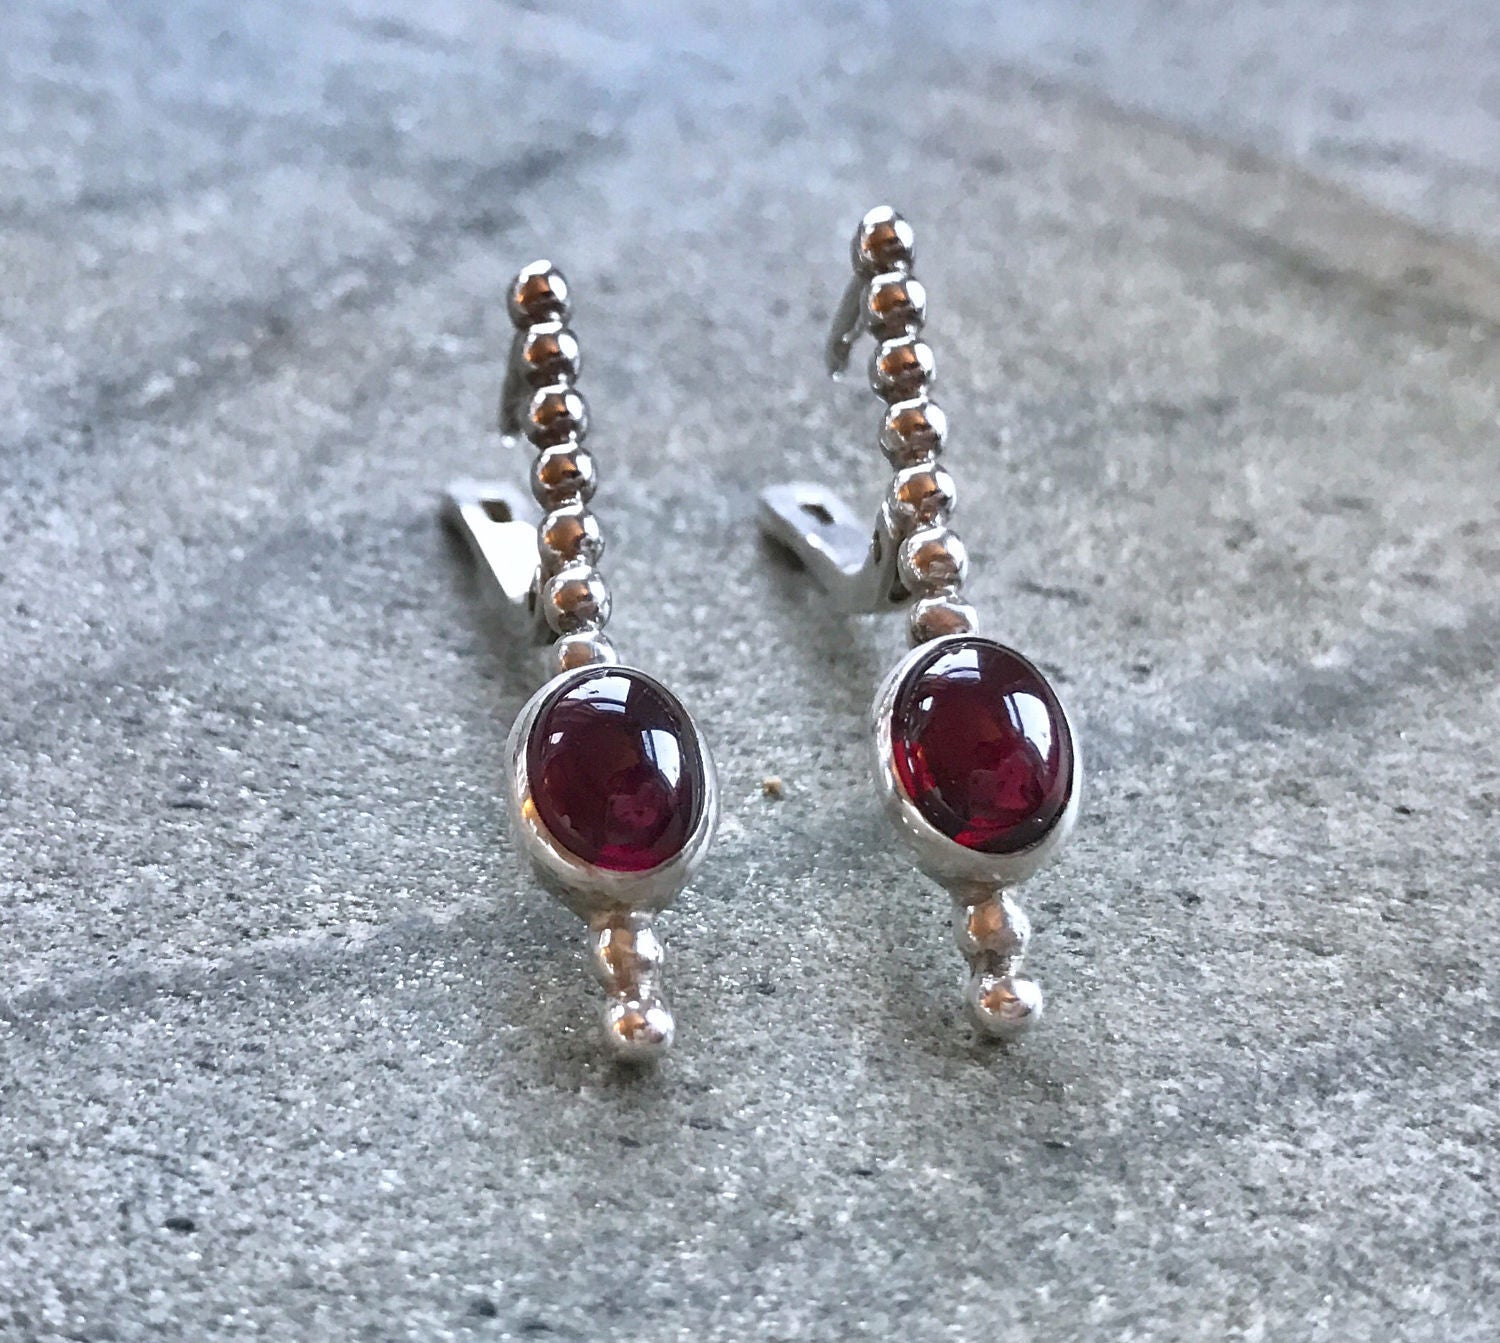 Garnet Earrings, Long Earrings, Red Long Earrings, Natural Garnet, Red Garnet Earrings, January Birthstone, January Earrings, Solid Silver